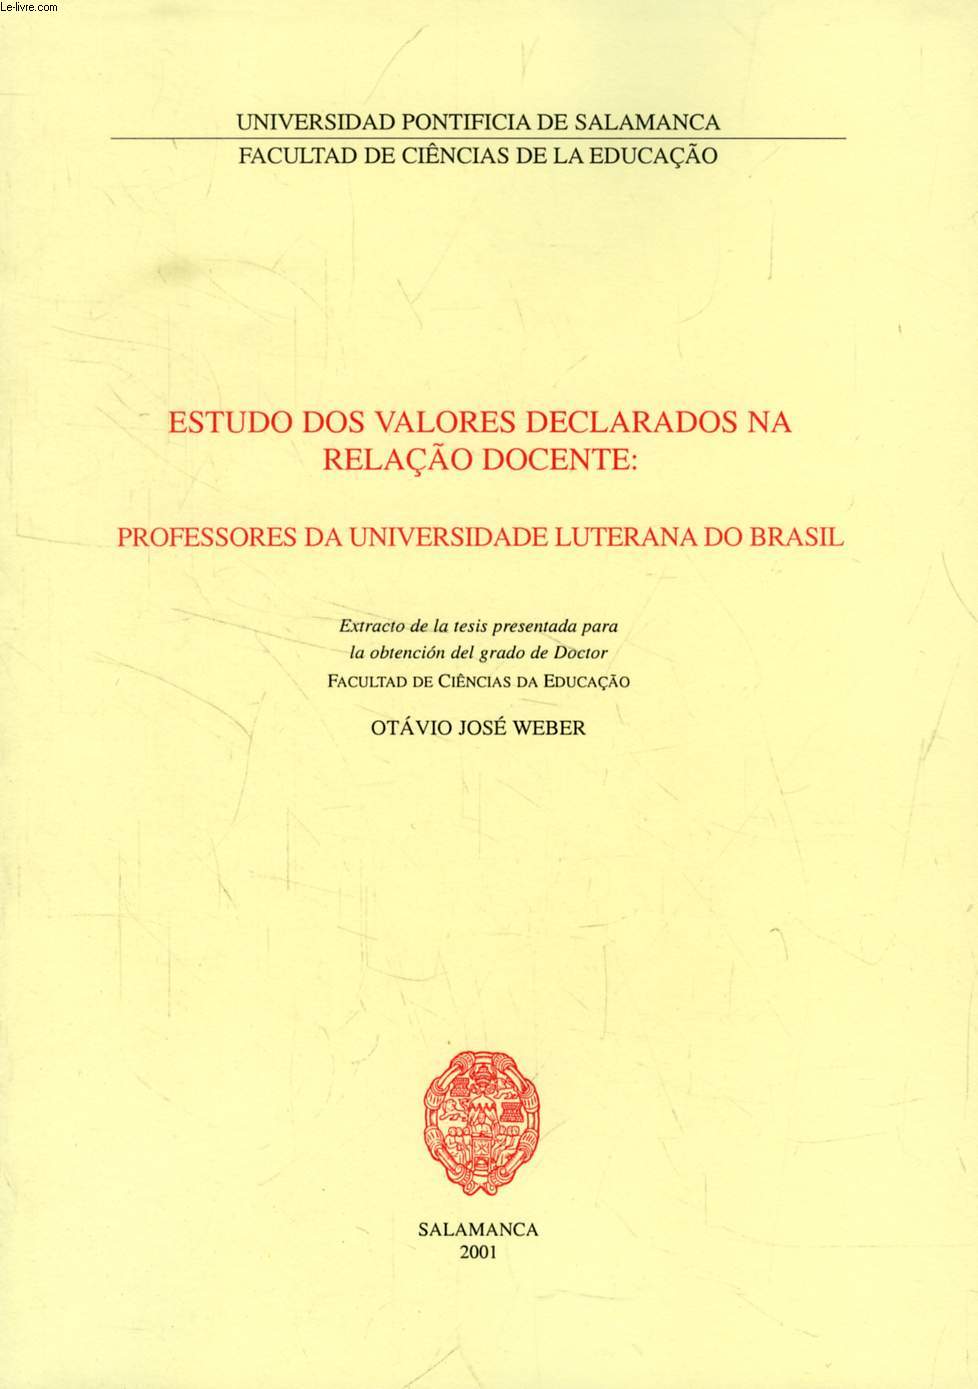 ESTUDO DOS VALORES DECLARADOS NA RELAO DOCENTE: PROFESSORES DA UNIVERSIDADE LUTERANA DO BRASIL (EXTRACTO DE LA TESIS)